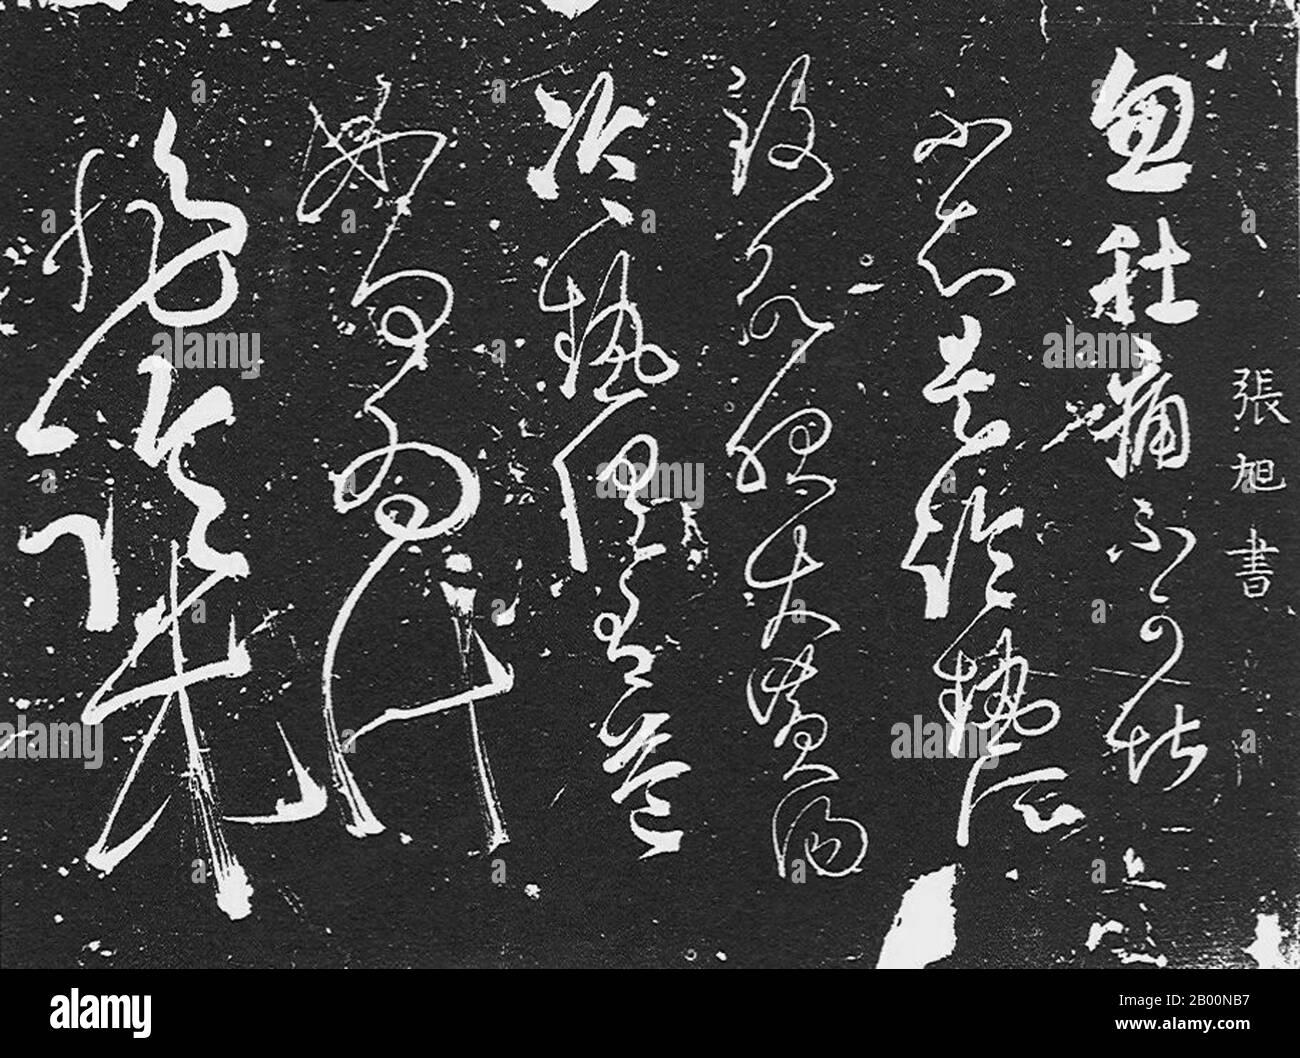 Chine : script chinois (cursif). Calligraphie de la dynastie Tang attribuée à Zhang Shui (9e siècle). En tant qu'auteur du style cursif sauvage, et non conformiste en esprit, Zhang Shui a agi tout à fait contre la convention calligraphique, gagnant le surnom de 'Crazy Zhang'. En état d'ébriété, il a été inspiré et procédÃ la création de sa merveilleuse calligraphie cursive devant les dignitaires. L'empereur de Tang Wenzong (r.809-840) considérait le script cursif de Zhang Shui ainsi que le poème de Lee Bai et l'épée de Pei Ming comme les « trois talents exquis de la dynastie Tang ». Banque D'Images